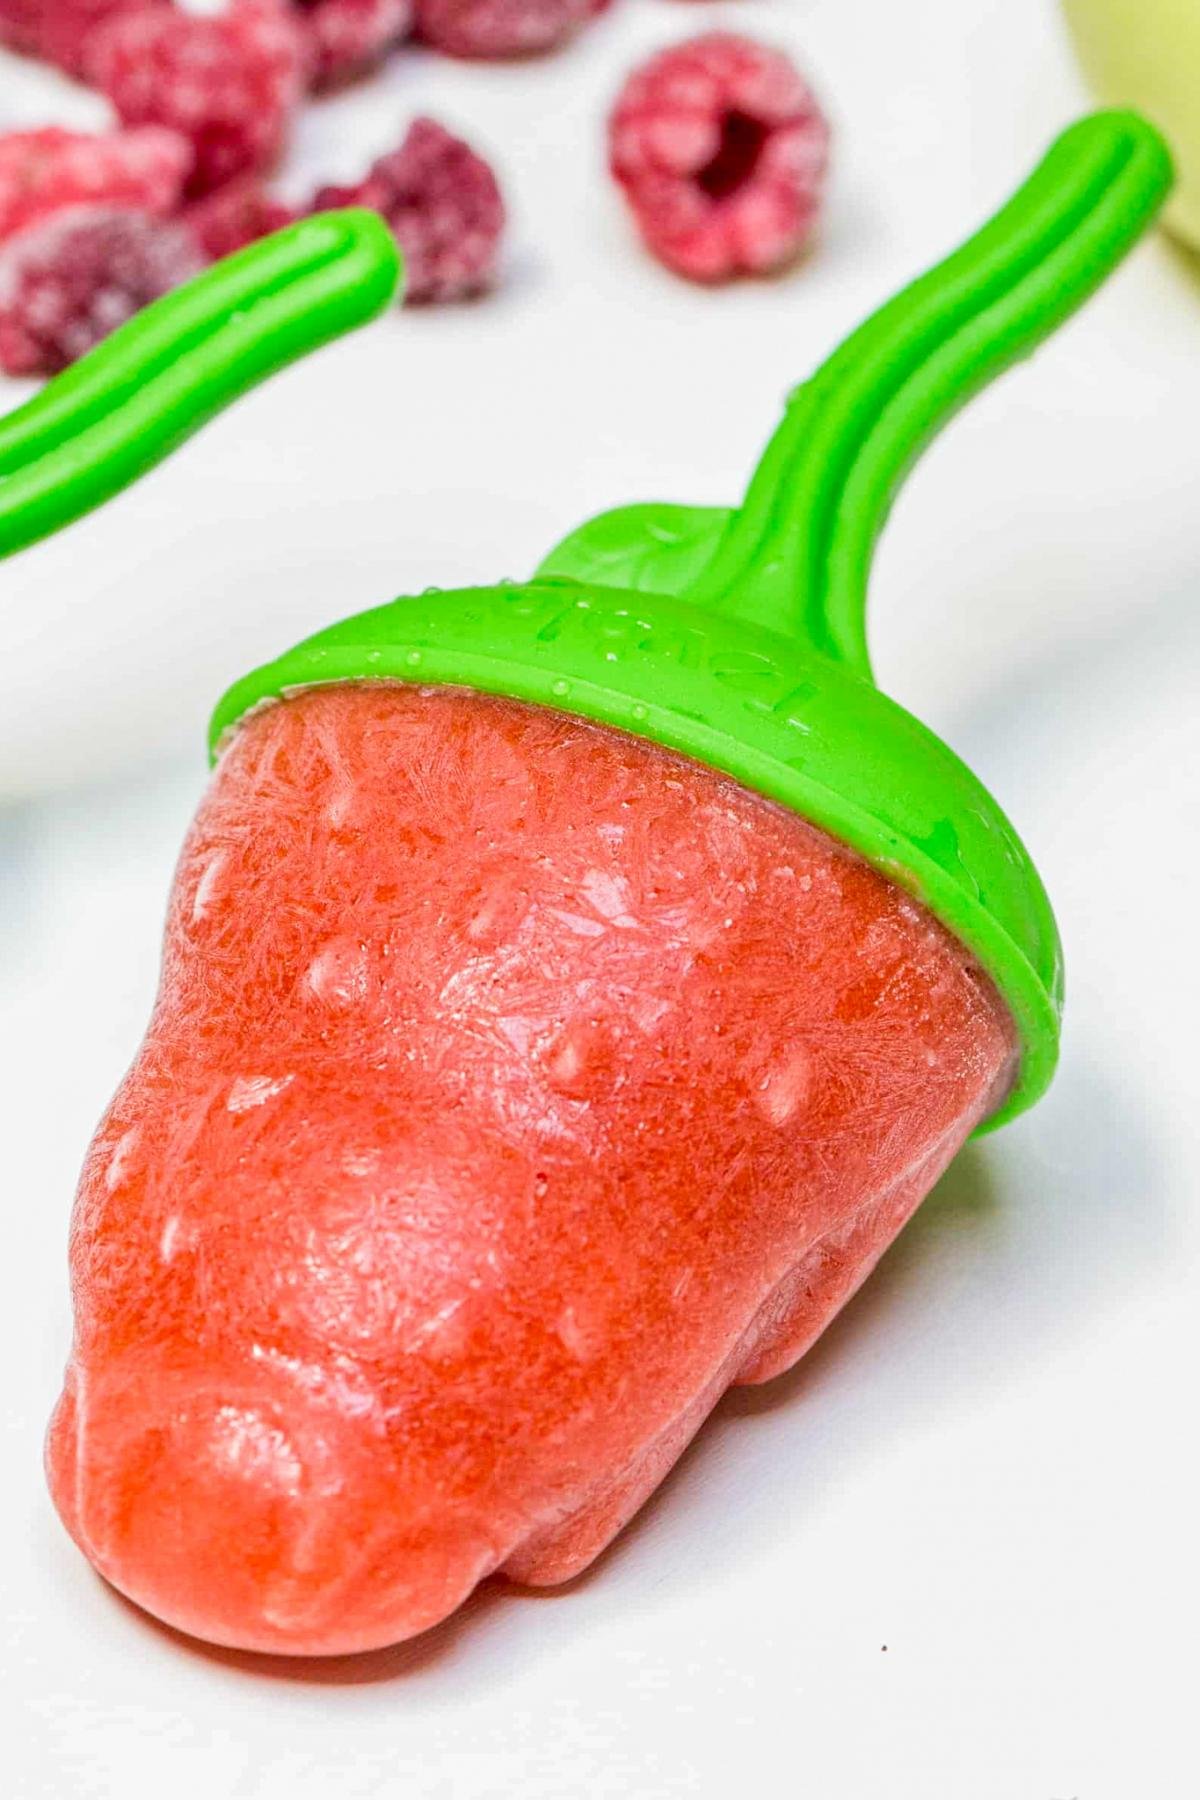 Easy Homemade Fruit Popsicle Recipes for Kids